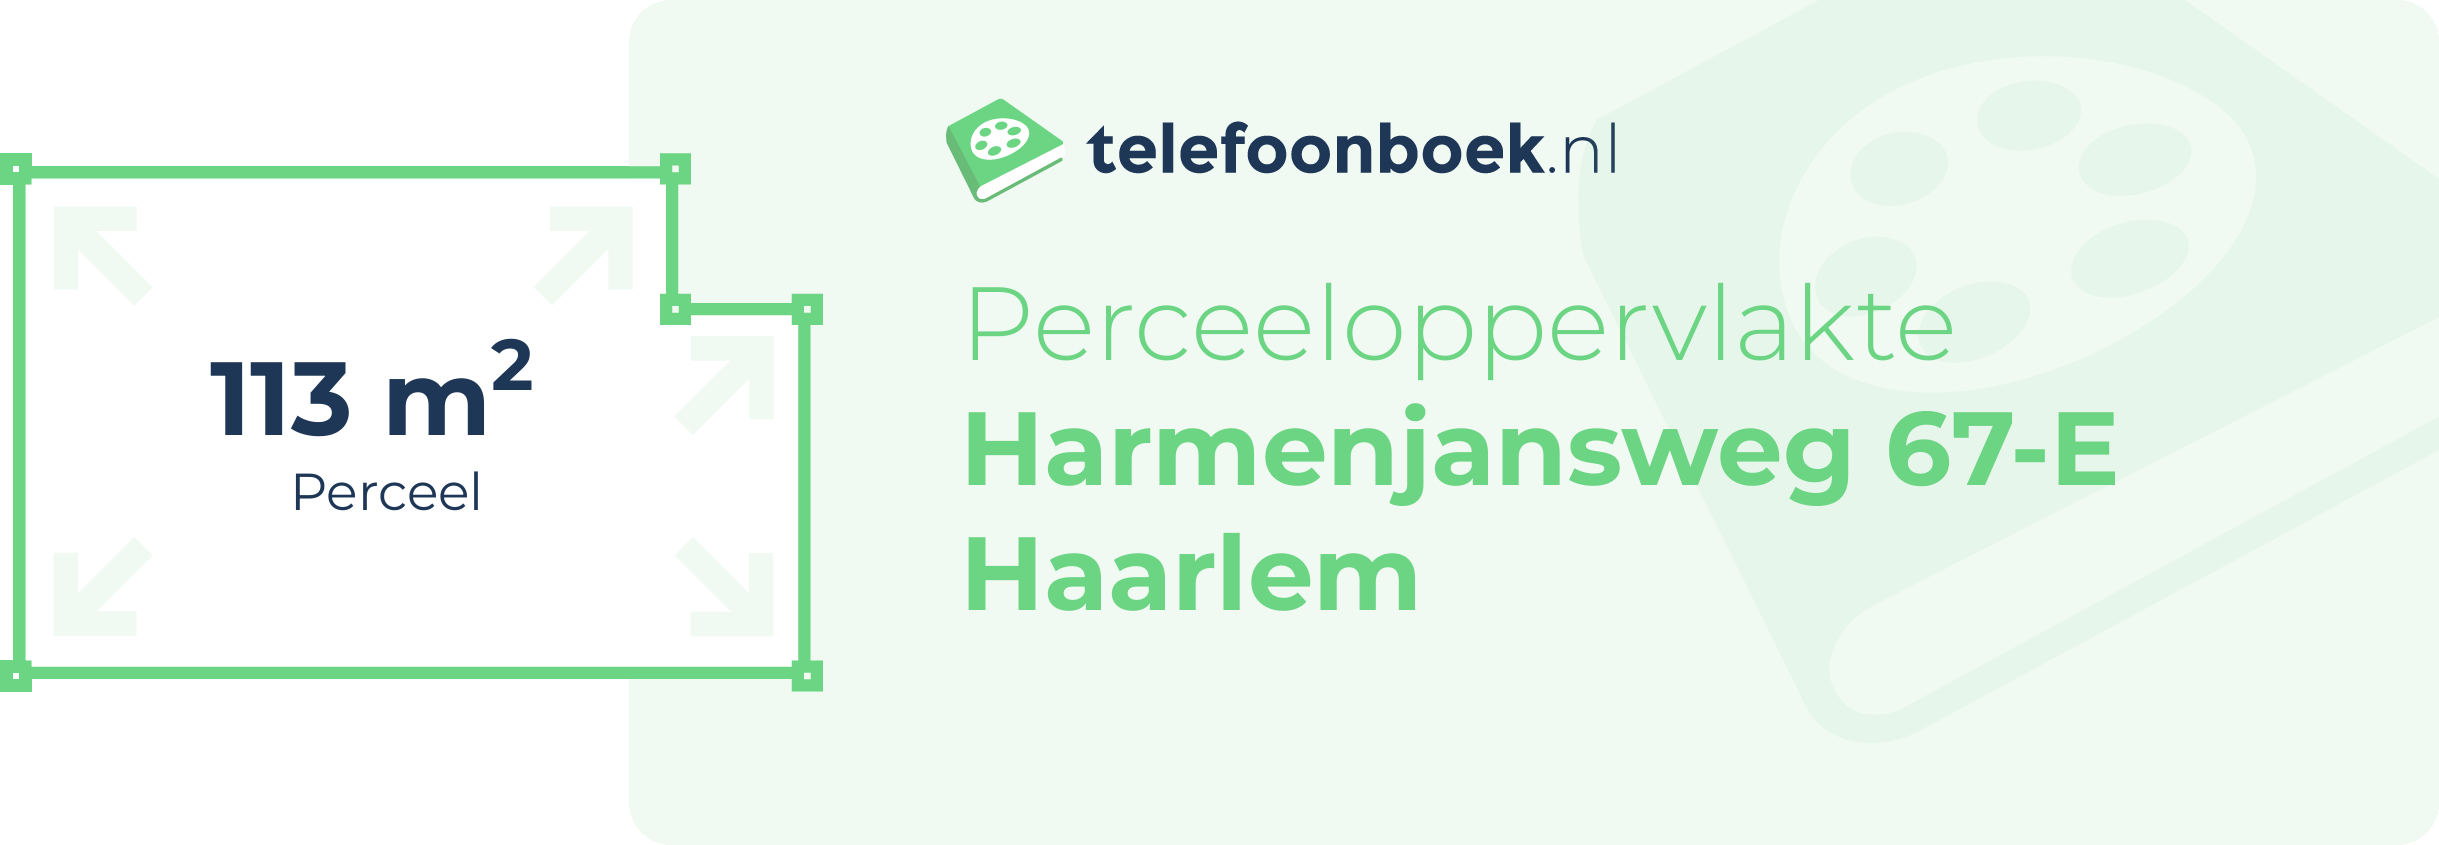 Perceeloppervlakte Harmenjansweg 67-E Haarlem